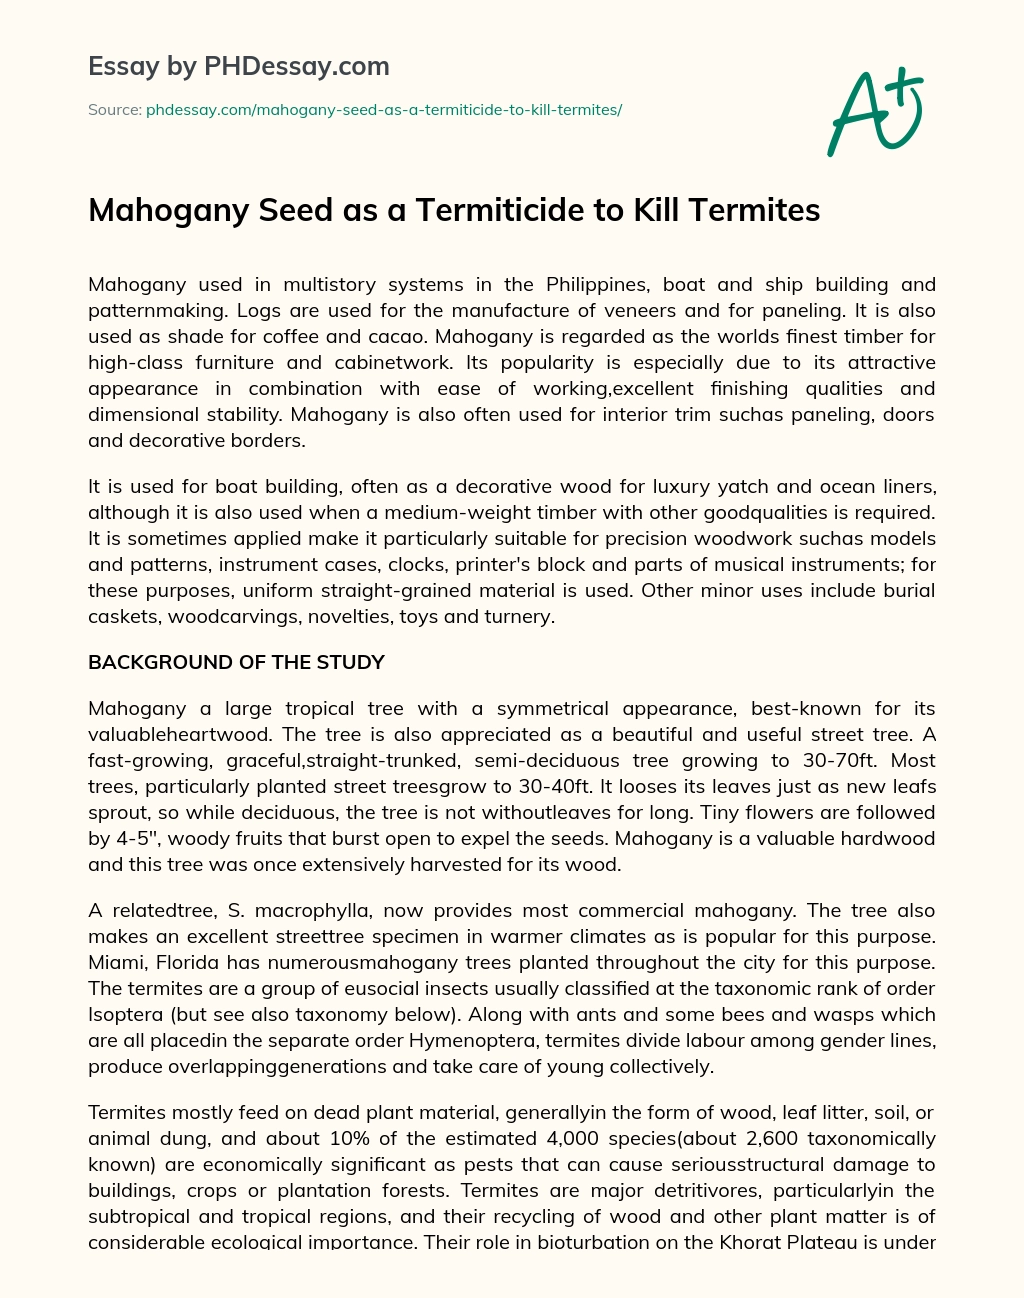 Mahogany Seed as a Termiticide to Kill Termites essay